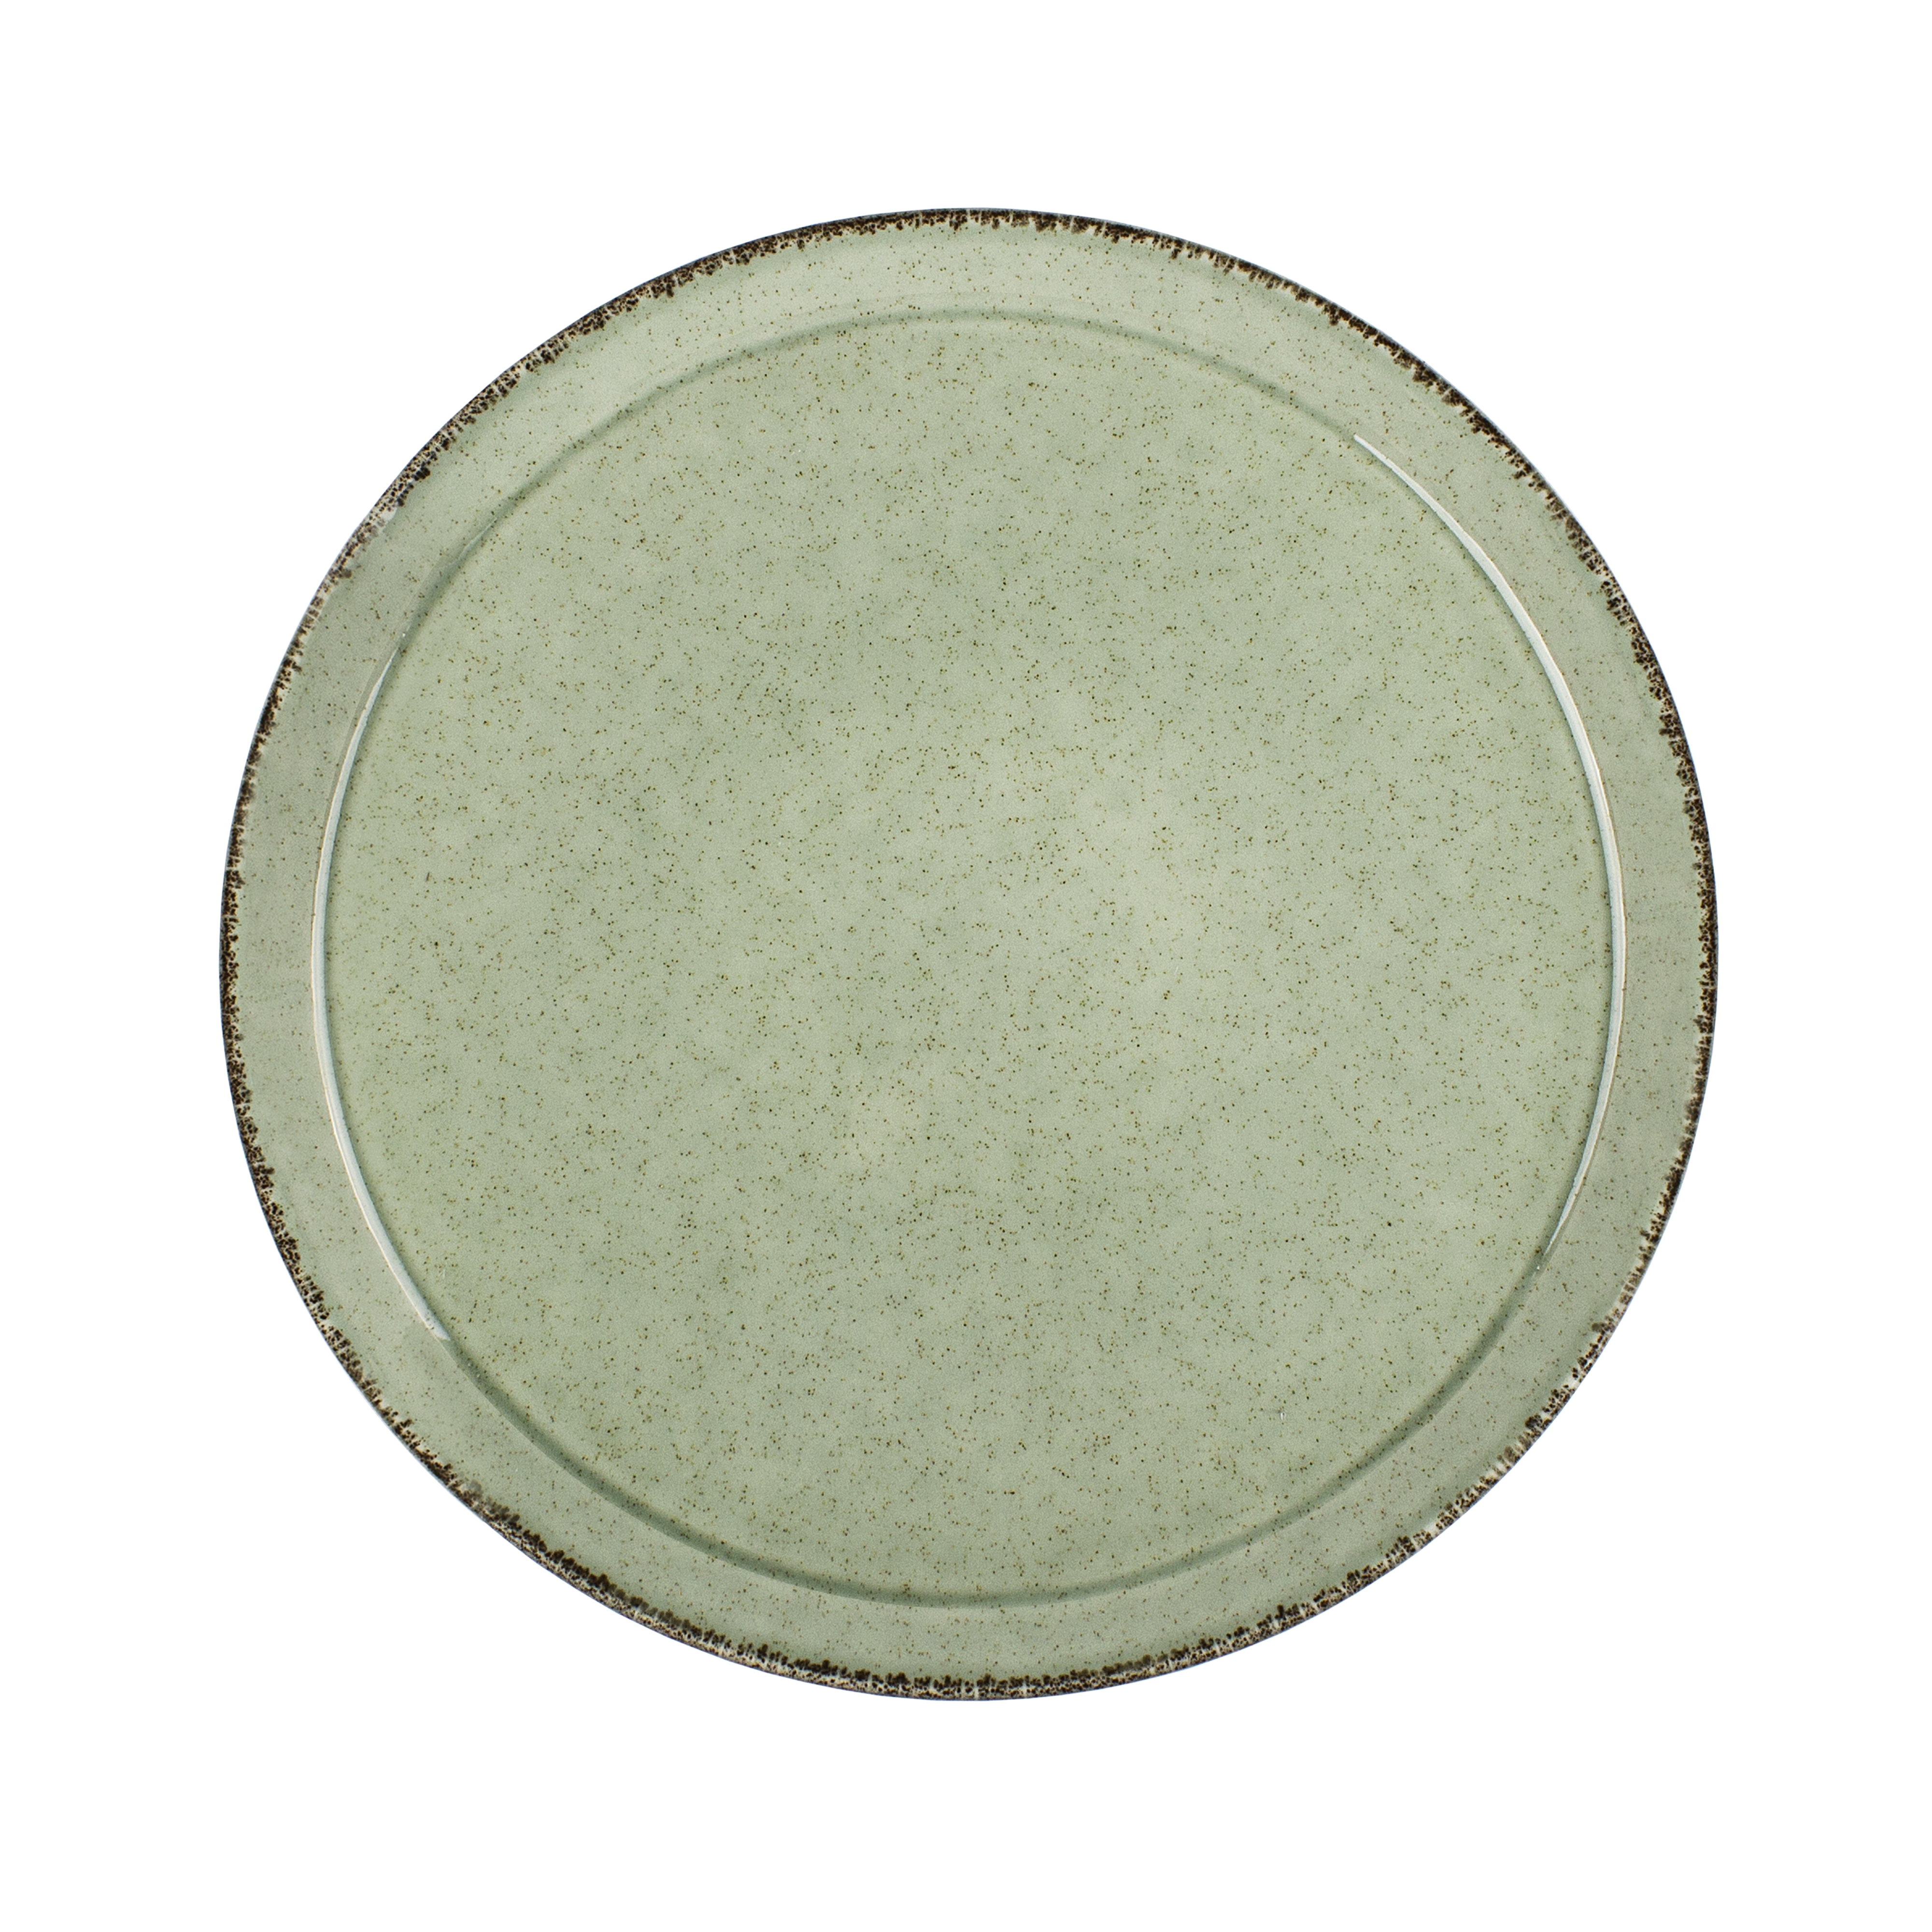 Πιάτο Ρηχό Πορσελάνης Forza Green Kutahya 26εκ. KXFR31026 (Σετ 6 Τεμάχια) (Υλικό: Πορσελάνη, Χρώμα: Πράσινο , Μέγεθος: Μεμονωμένο) – KUTAHYA PORSELEN – KXFR31026